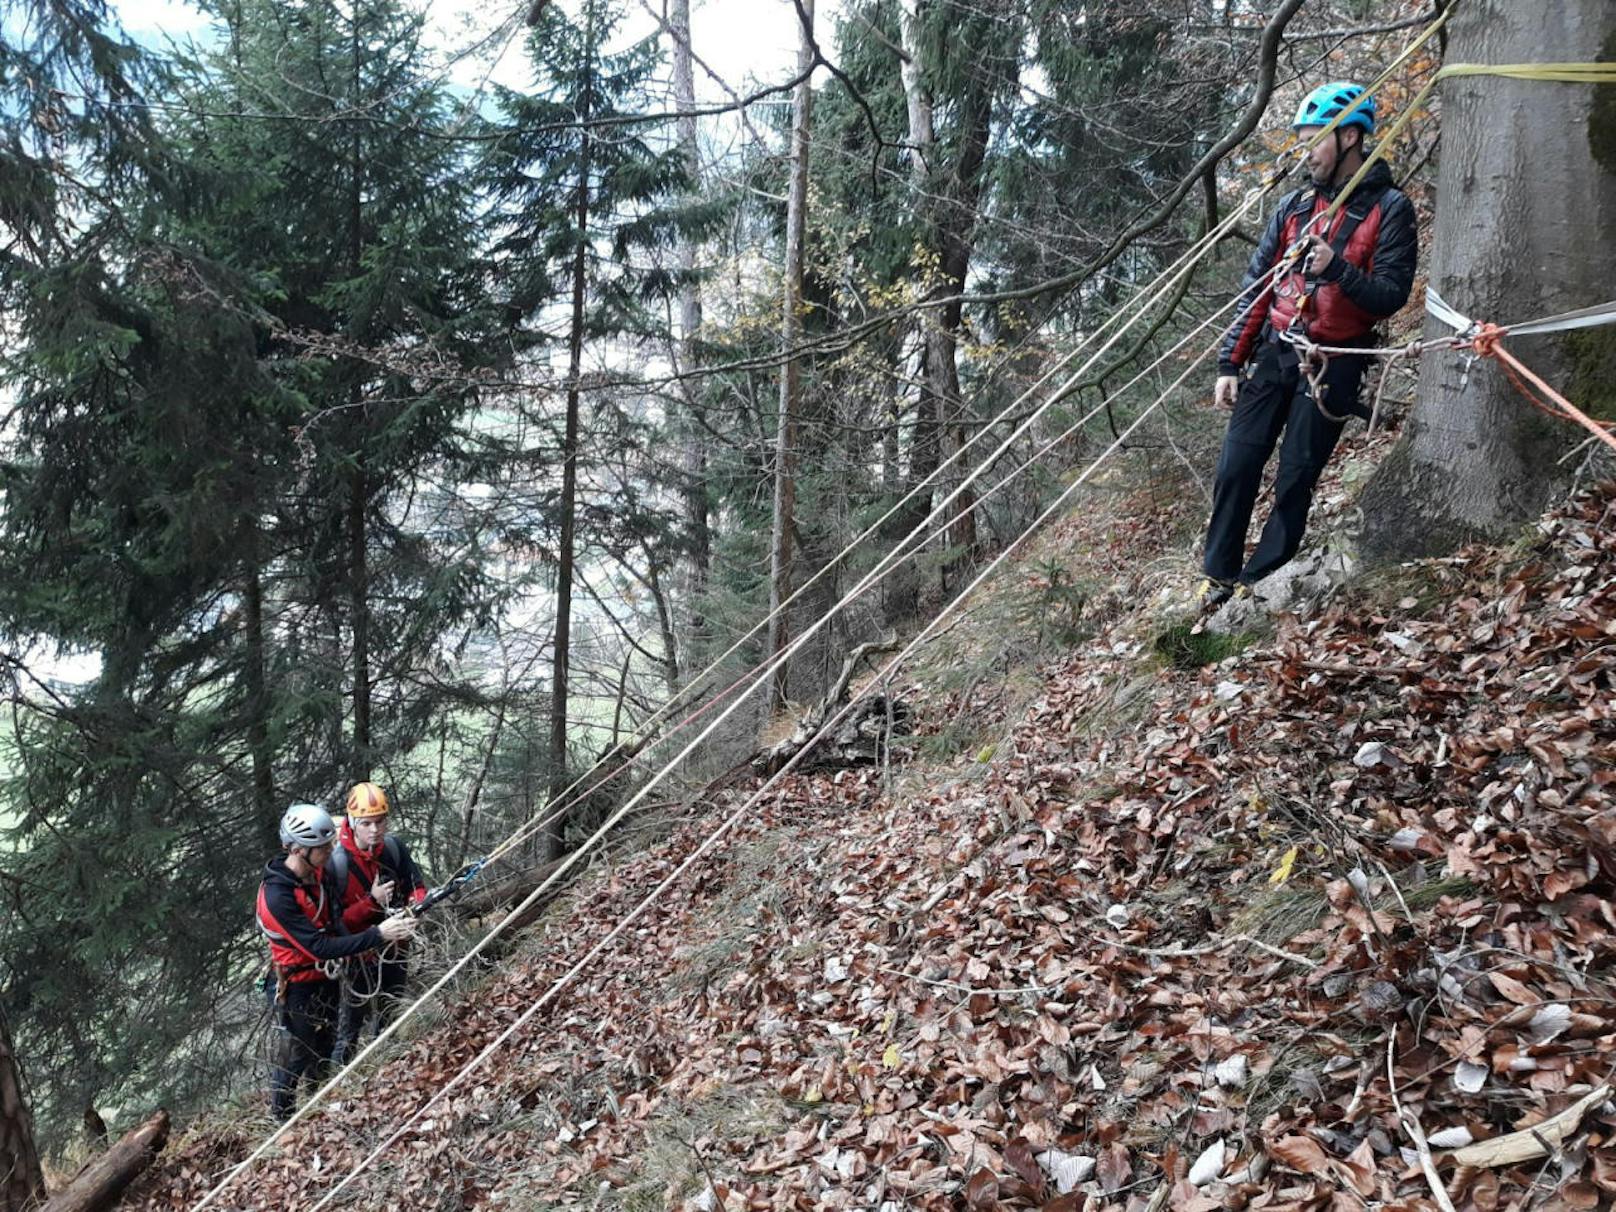 Bergretter aus Kufstein stießen Mitte November im Zuge von Sicherungsmaßnahmen nach einem Felsabbruch auf die Leichenteile.